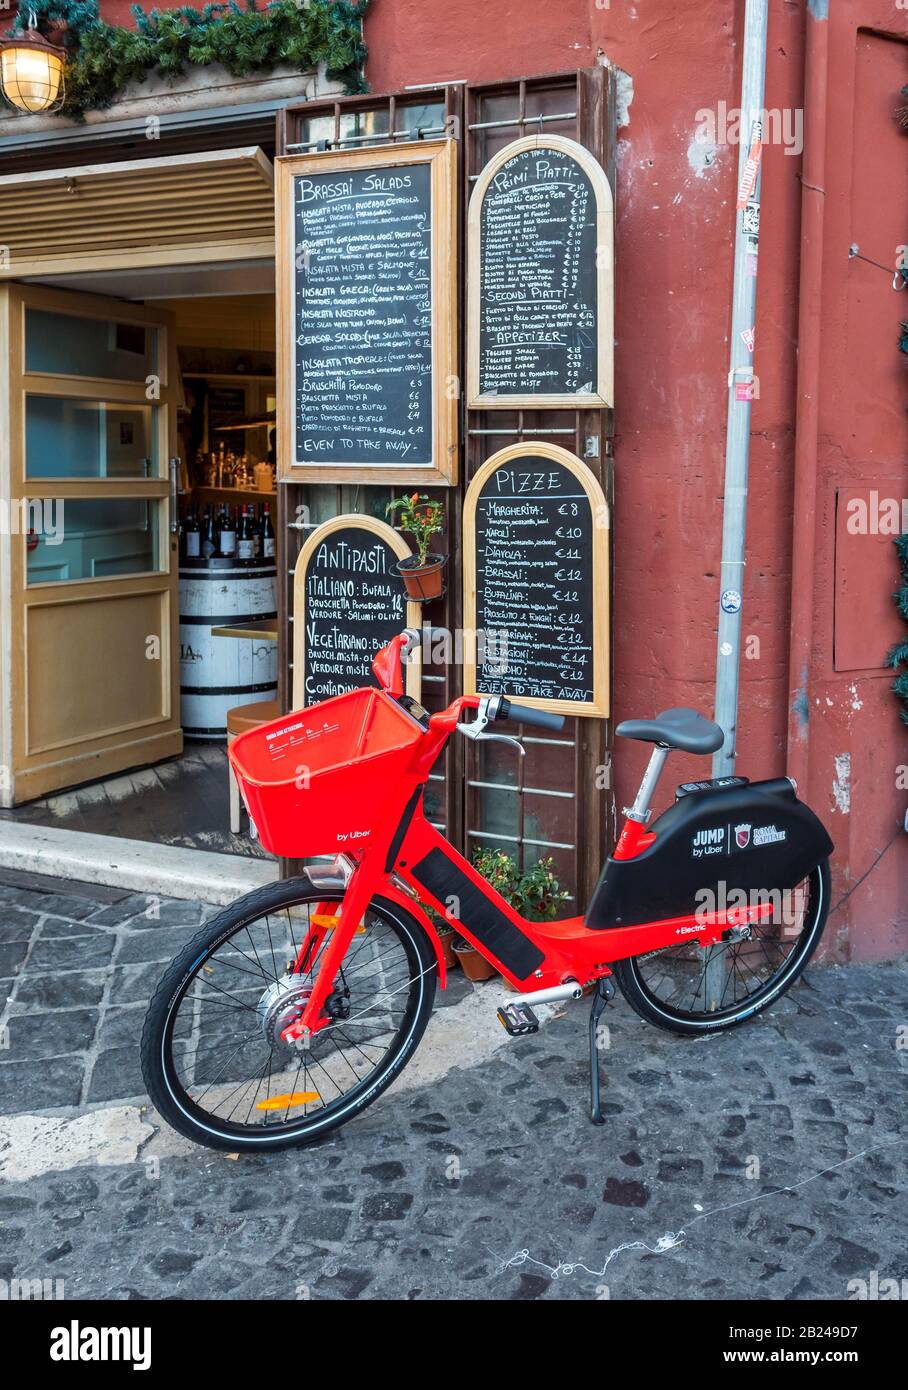 Bici elettrica da noleggio SALTO rosso fuori ristorante italiano con menù a  lavagna scritta a mano, Roma, Italia Foto stock - Alamy